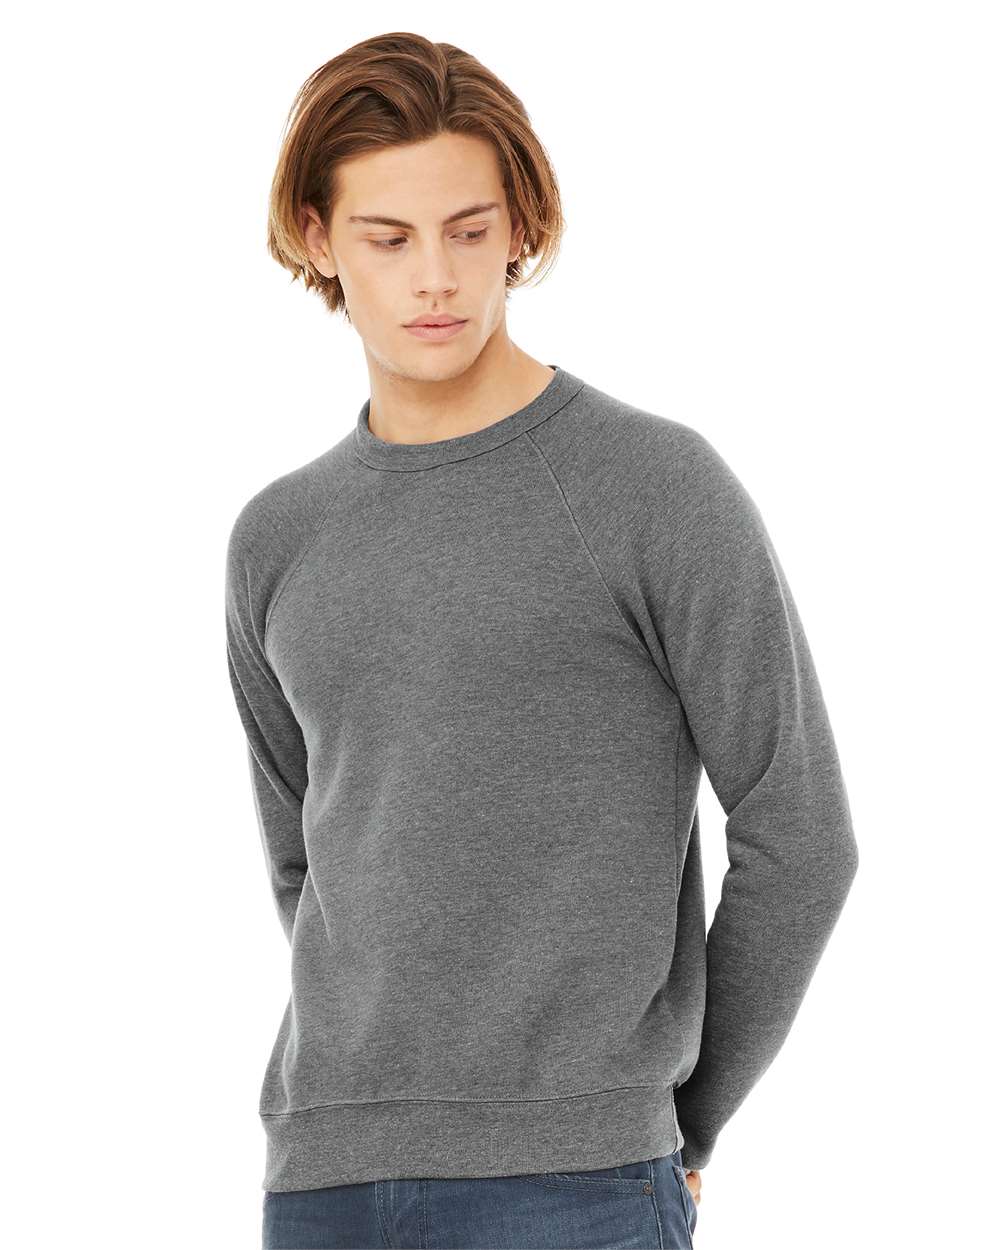 Bella + Canvas Fleece Crewneck Sweatshirt Size 2XLarge - 3XLarge